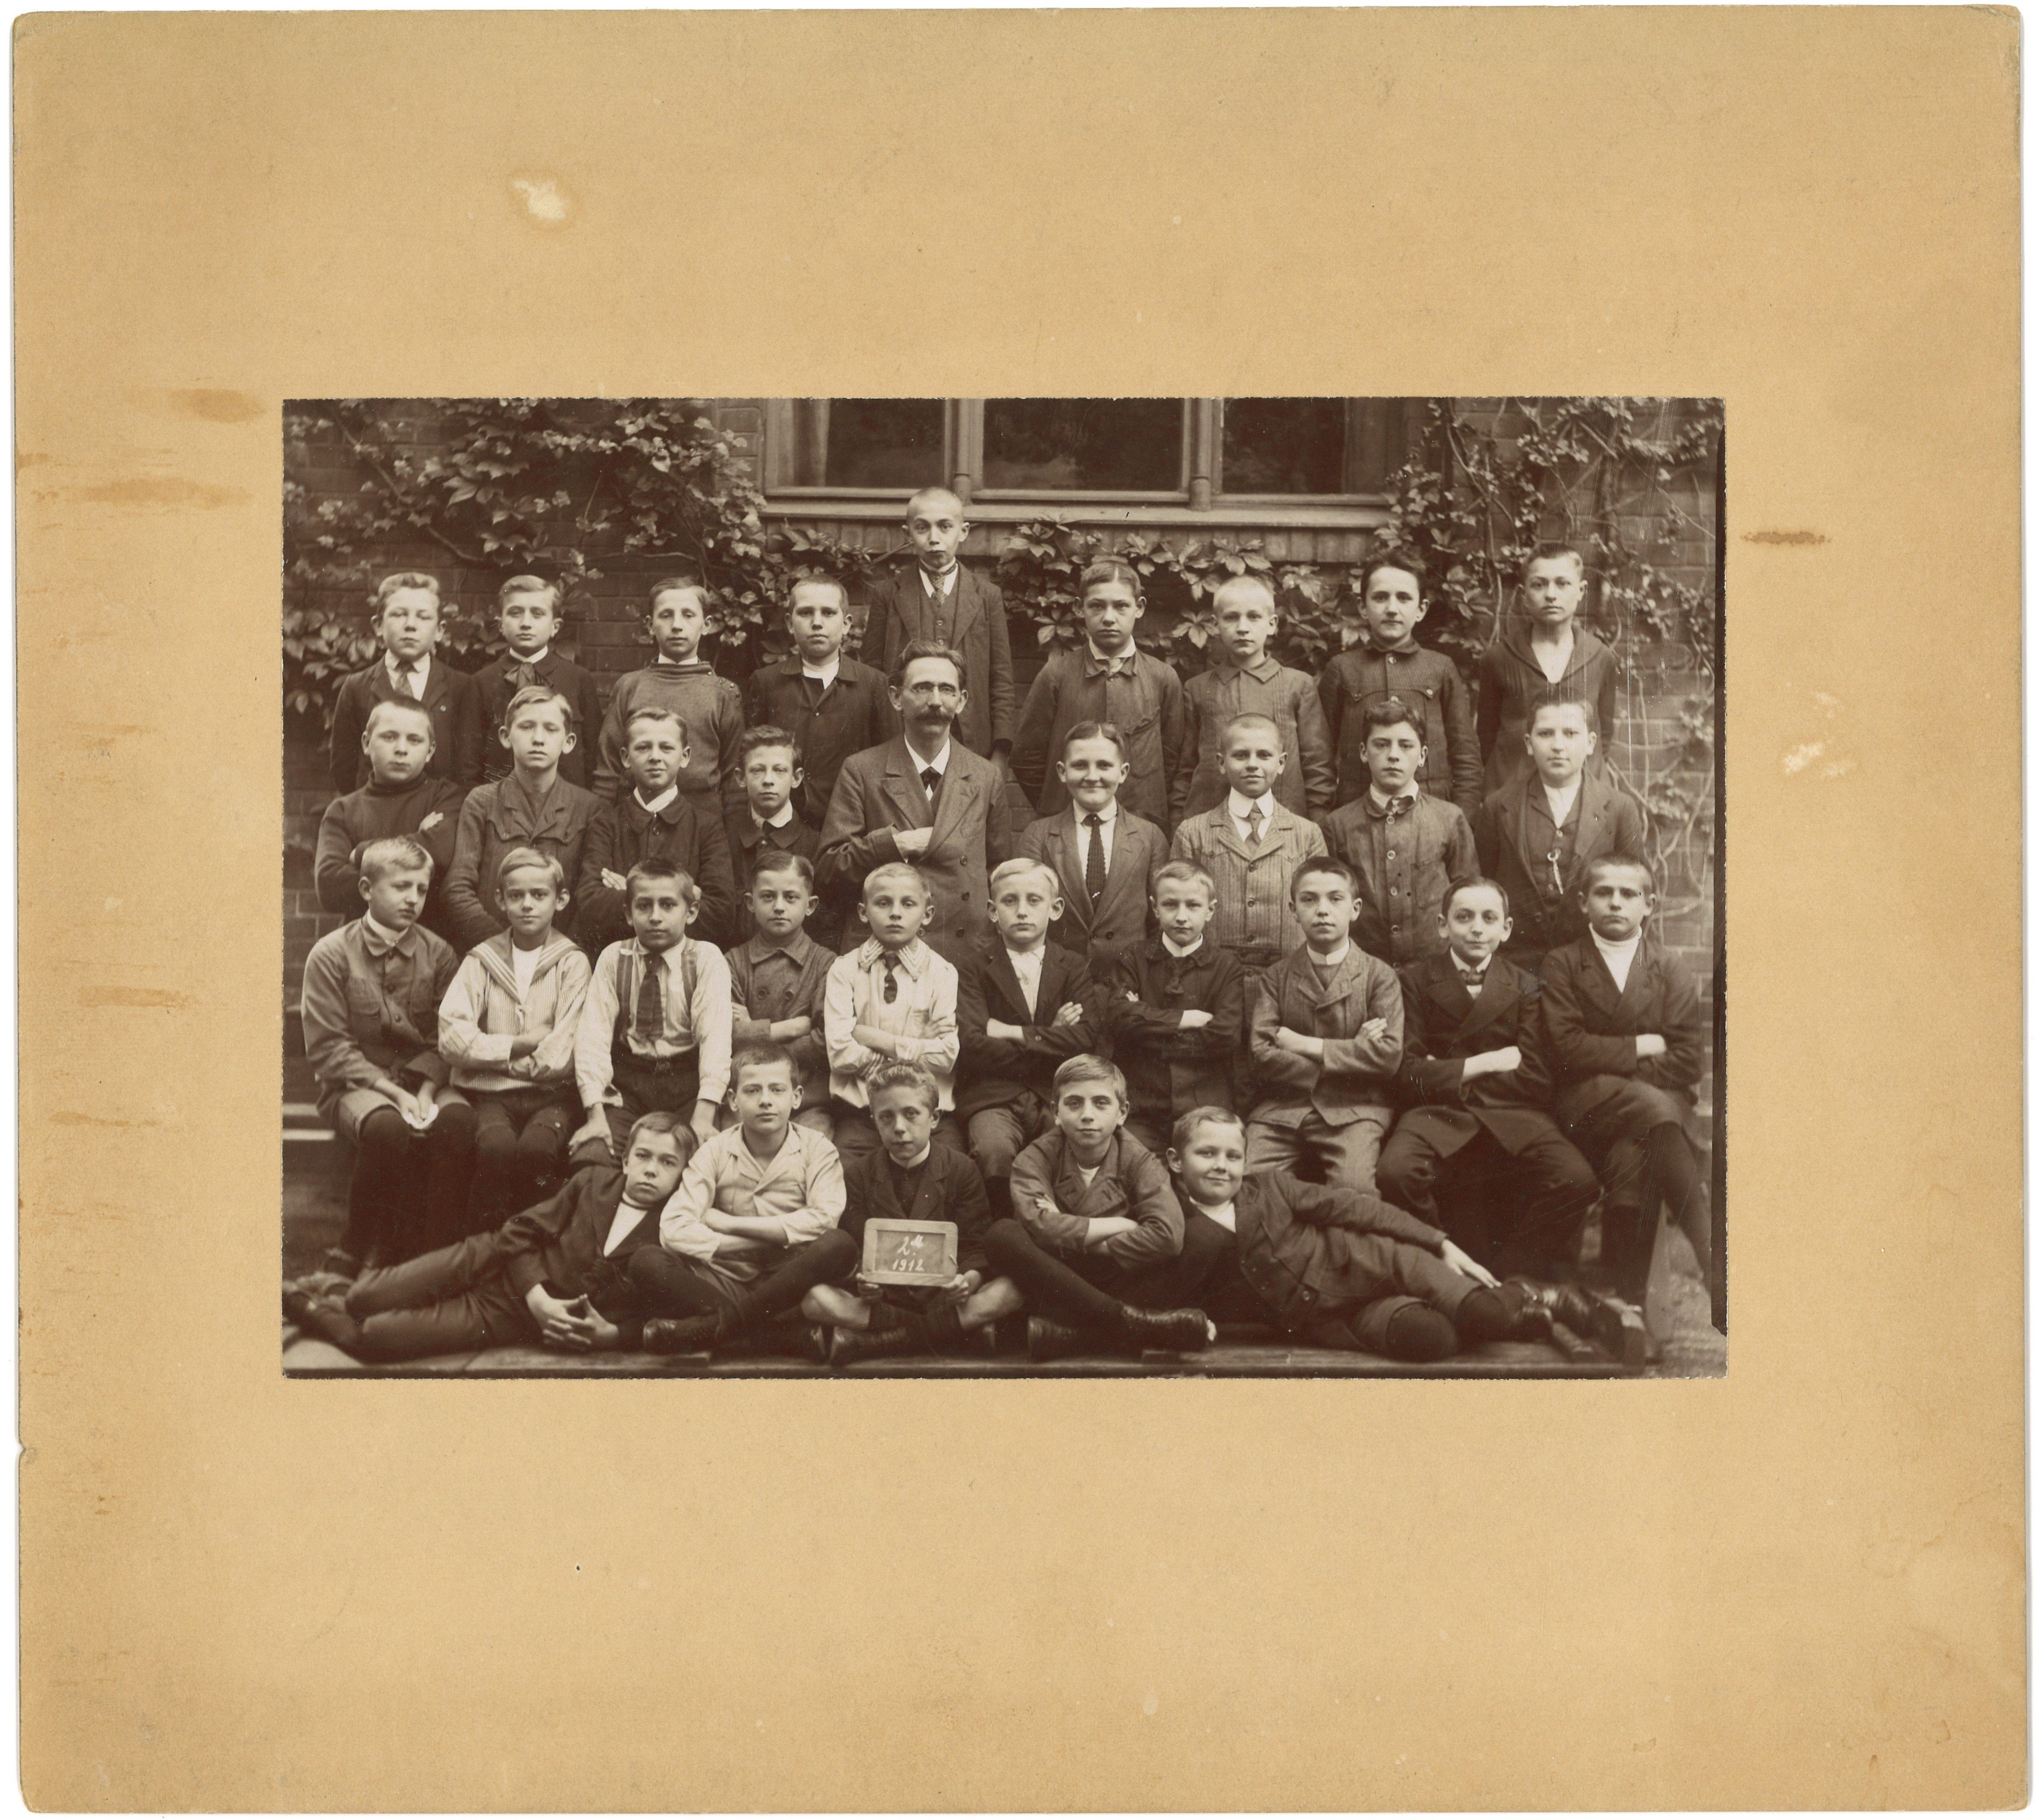 Berlin (?): Klassenbild einer II. Klasse 1912 (Landesgeschichtliche Vereinigung für die Mark Brandenburg e.V., Archiv CC BY)